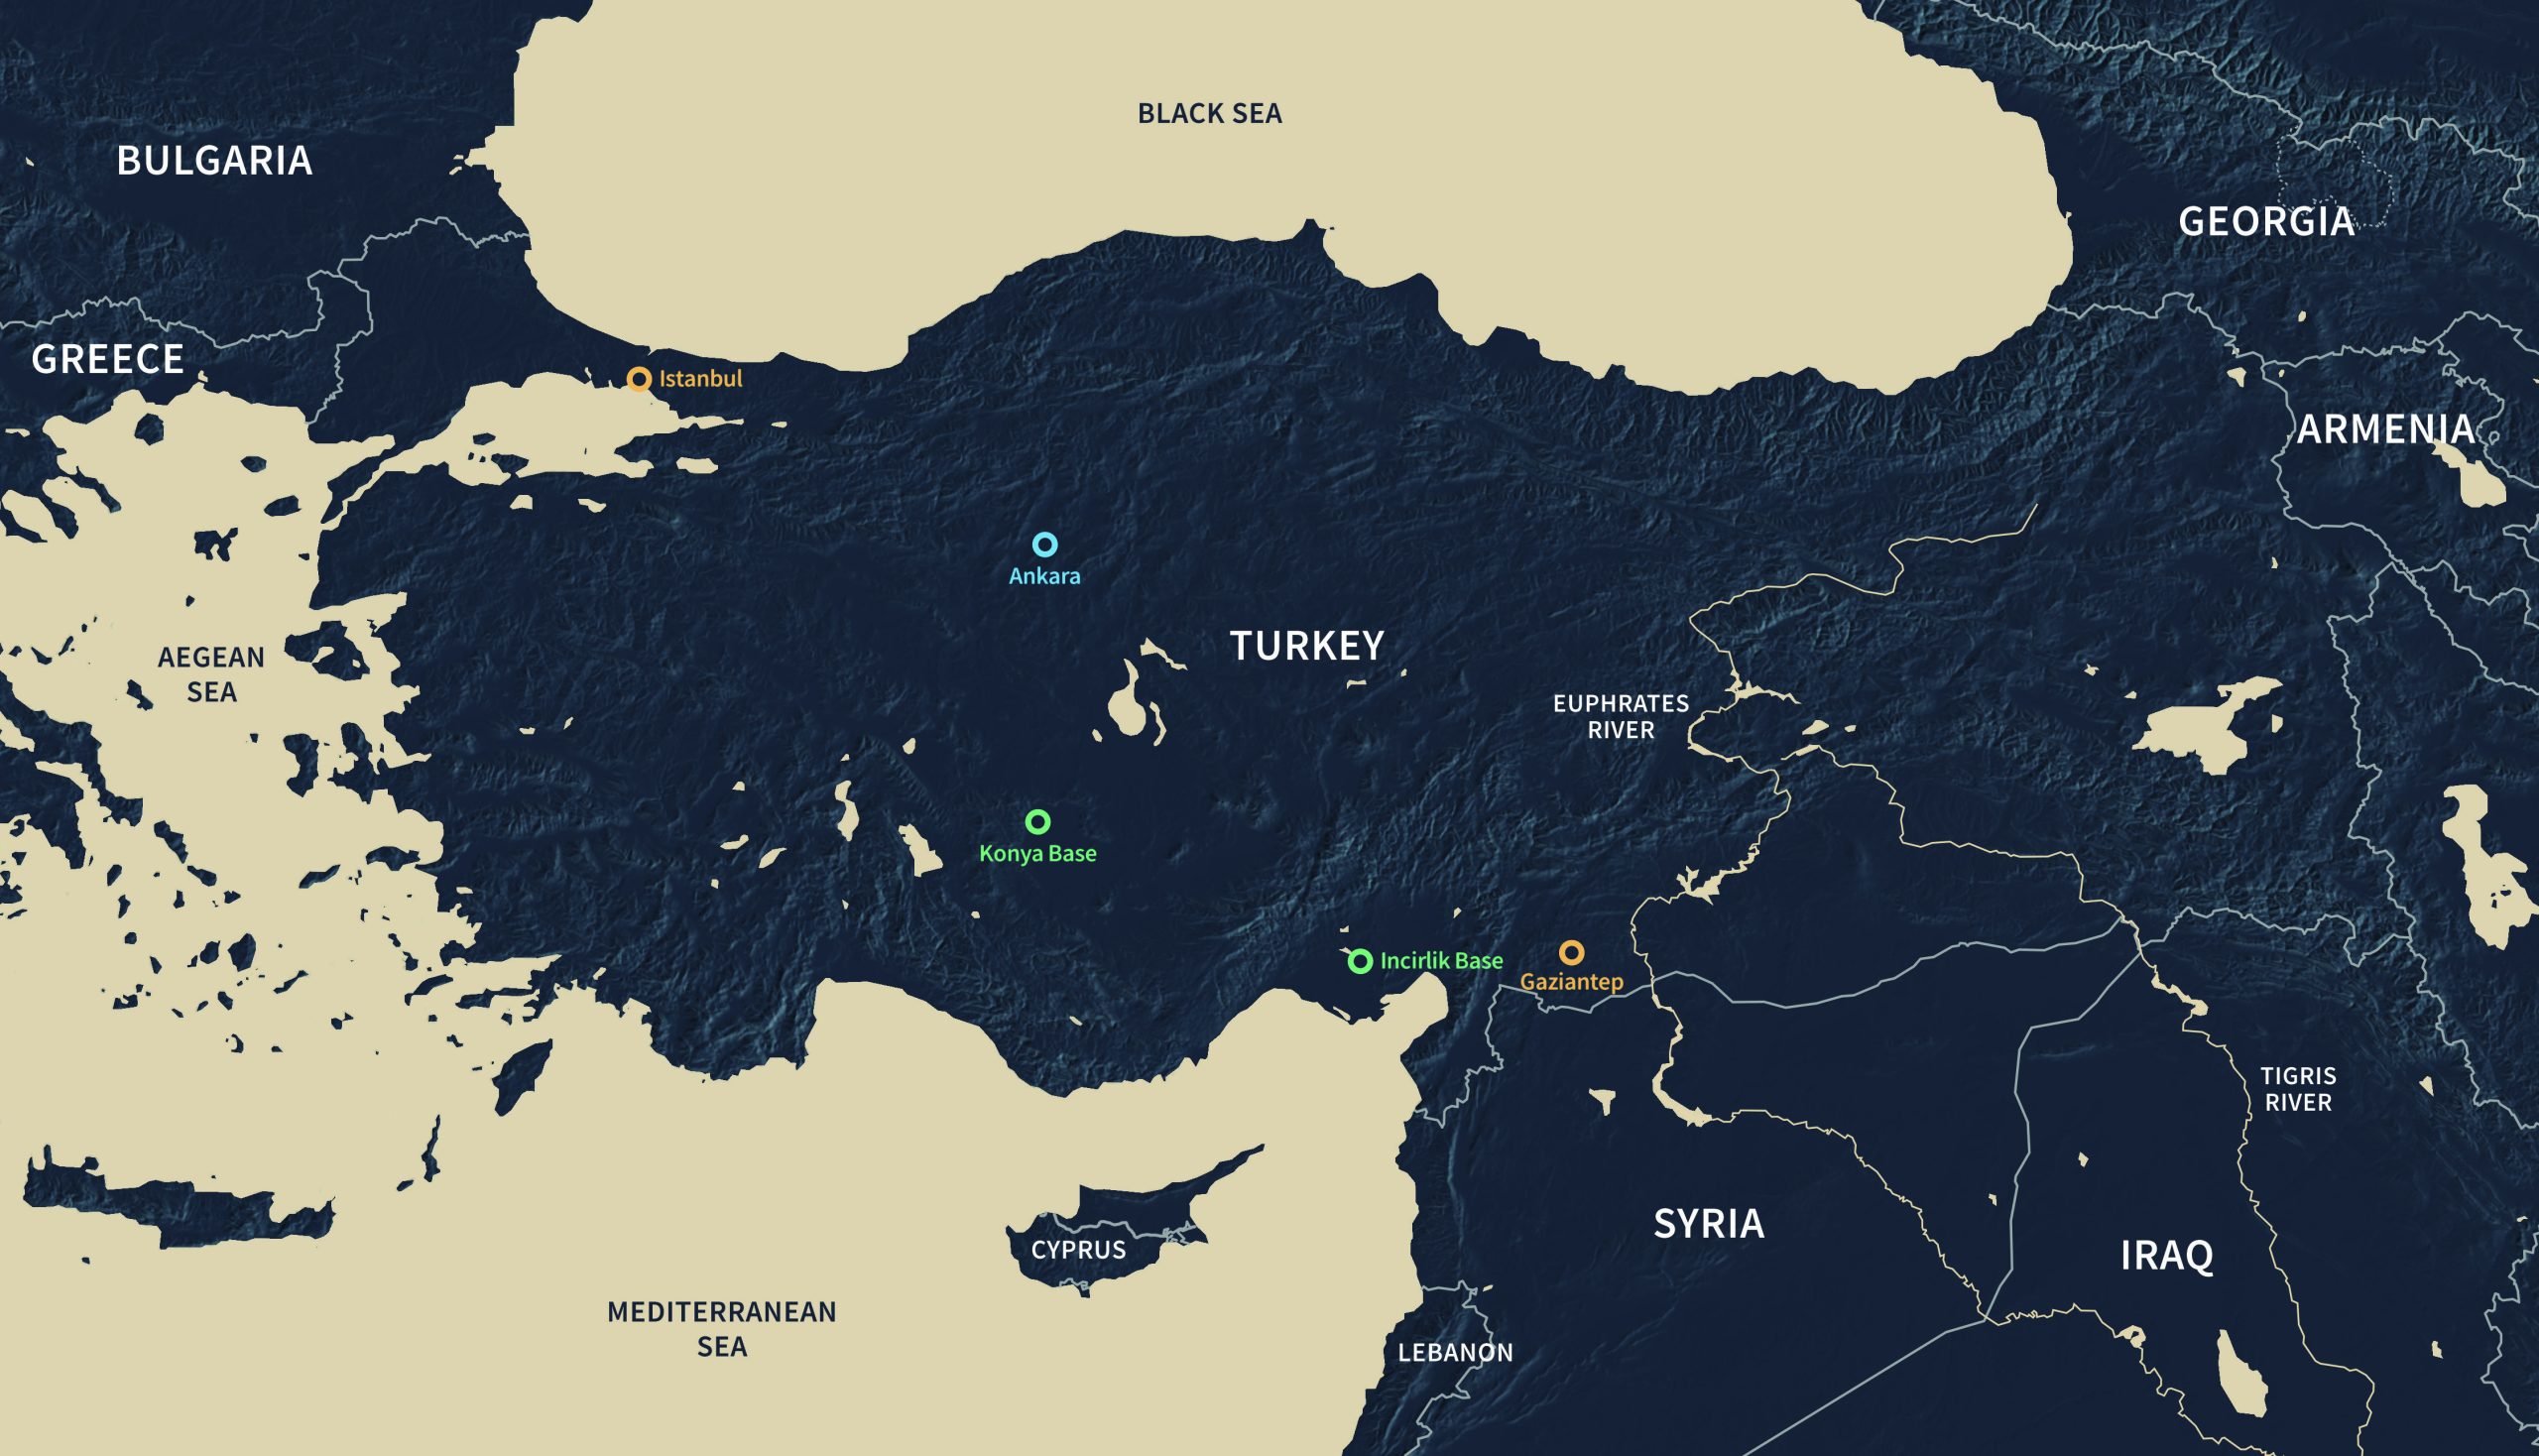 Θριαμβολογεί ο τουρκικός Τύπος για παλιό χάρτη που έδωσαν στη δημοσιότητα: «Η Ελλάδα εξαφανίζεται»